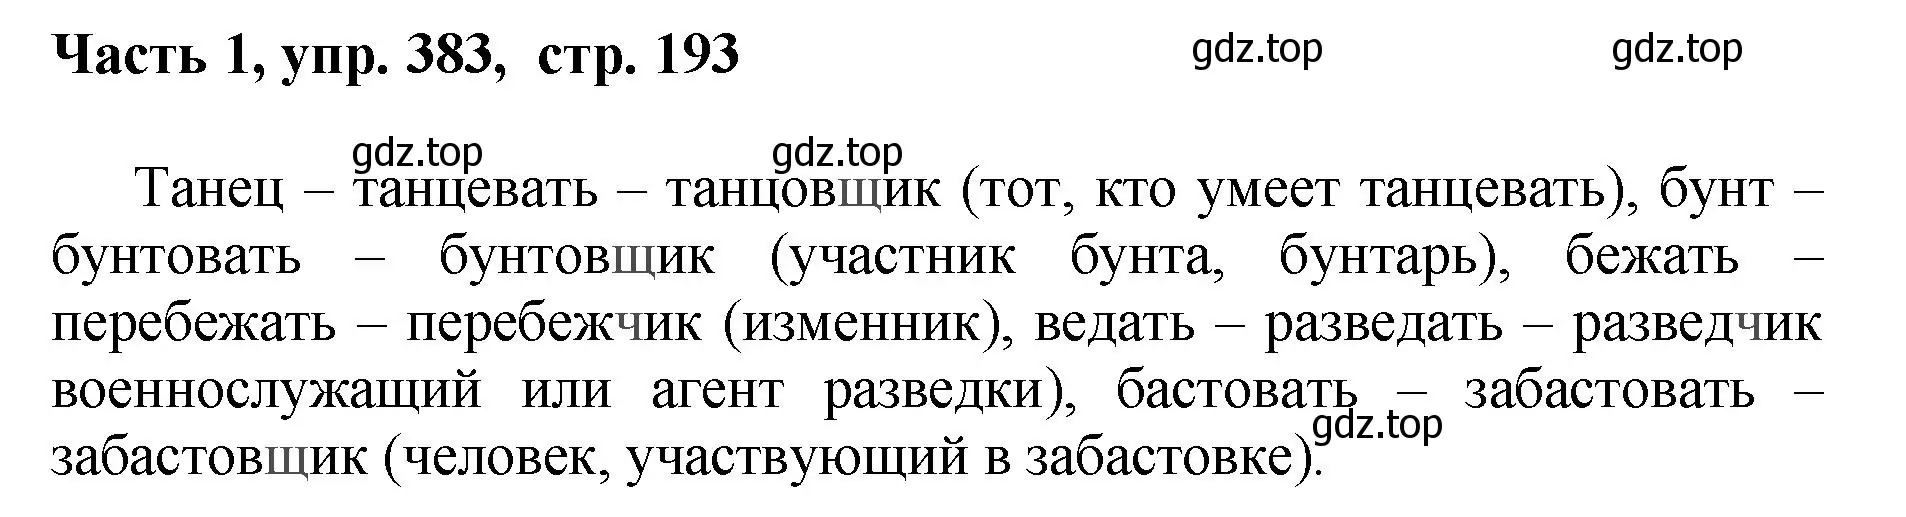 Решение номер 383 (страница 193) гдз по русскому языку 6 класс Баранов, Ладыженская, учебник 1 часть